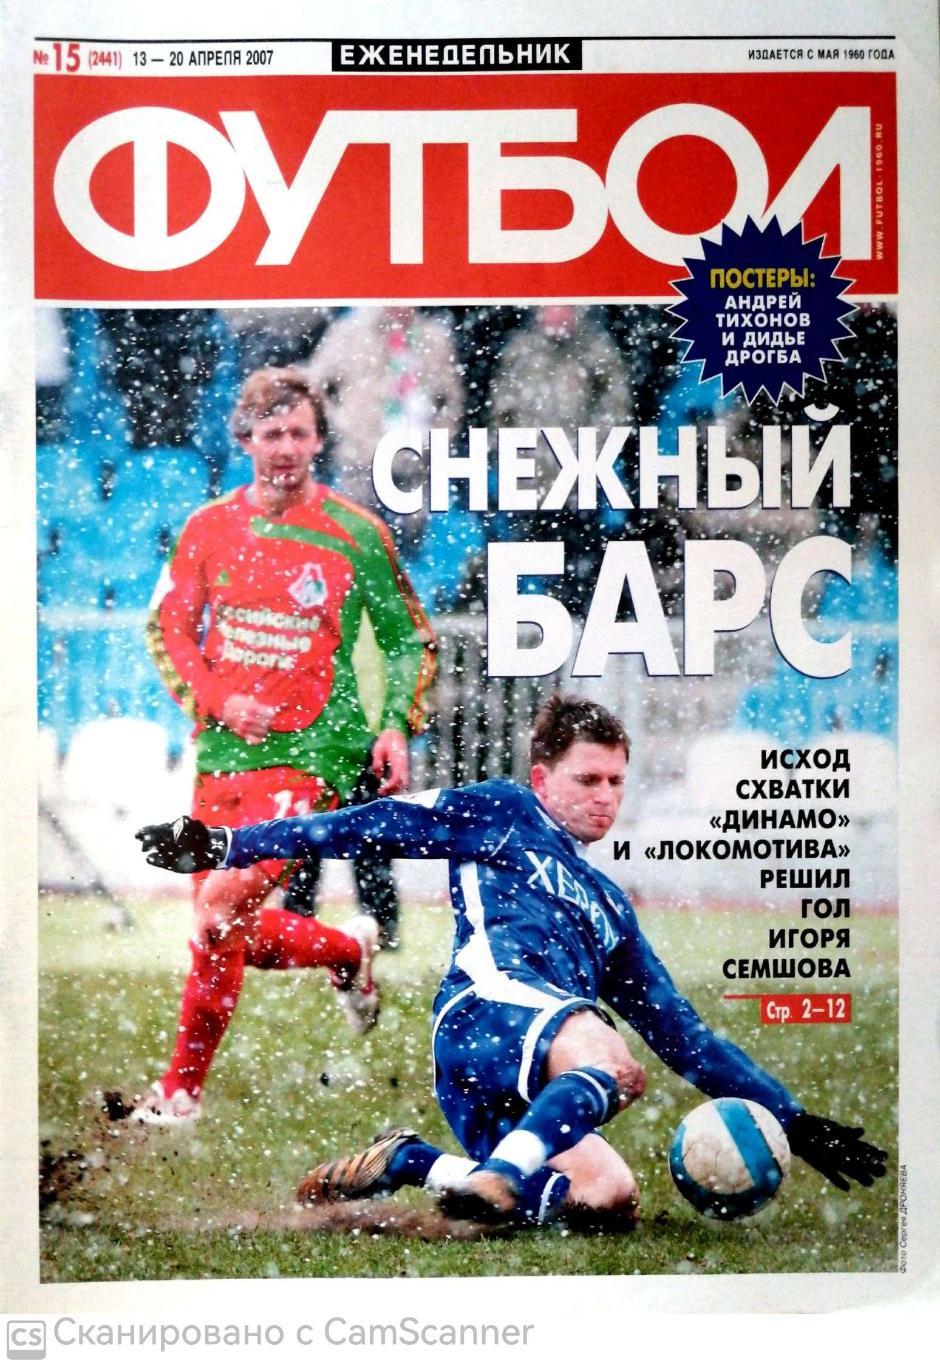 Еженедельник «Футбол» (Москва). 2007 год. №15 постер тихонов